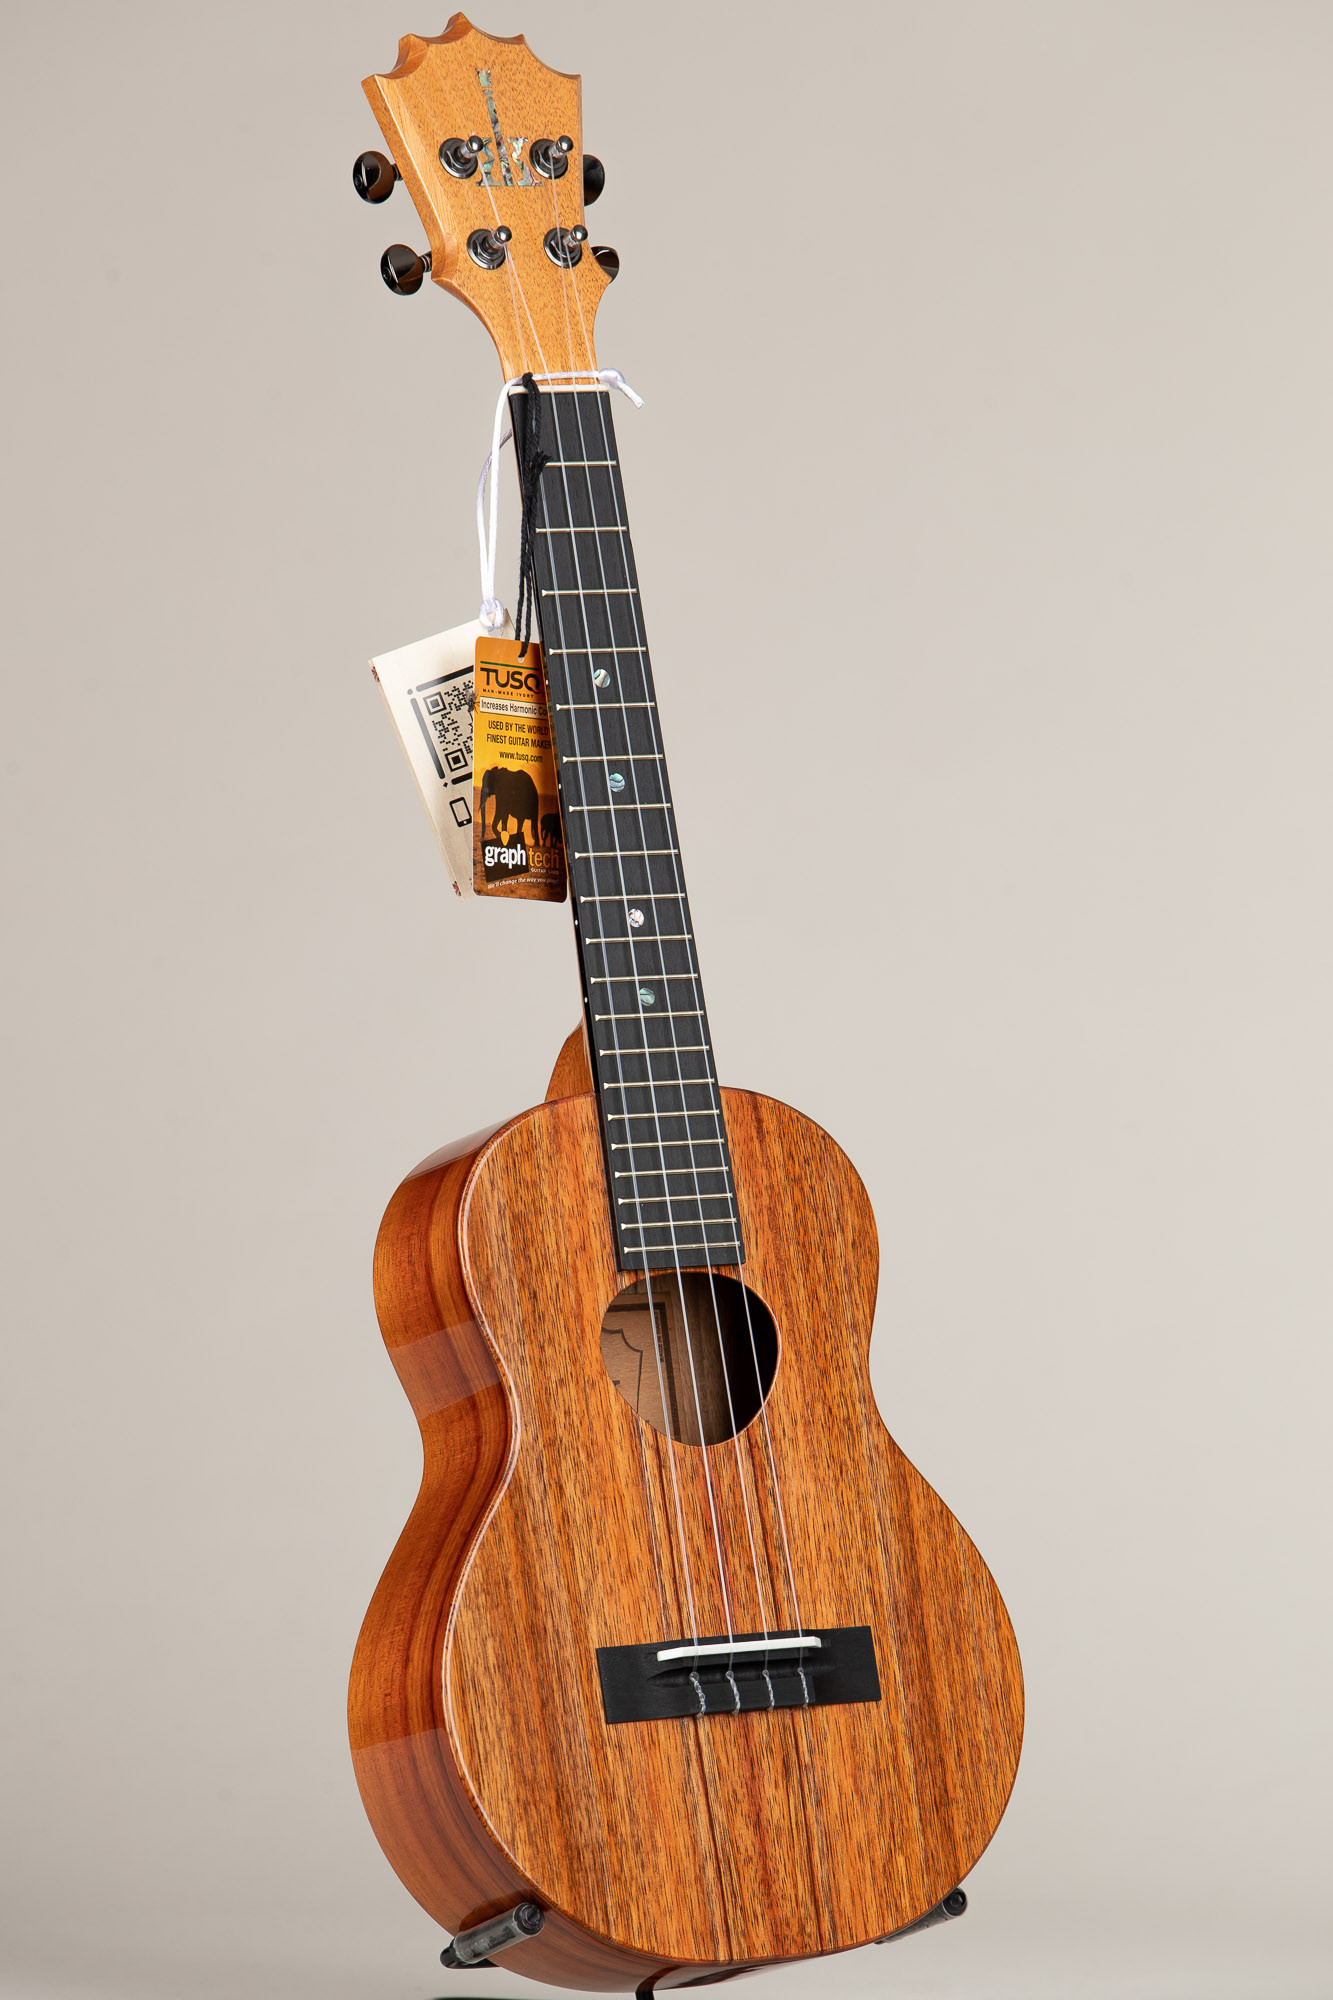 Ukulele Capo - Global Musical Instrument